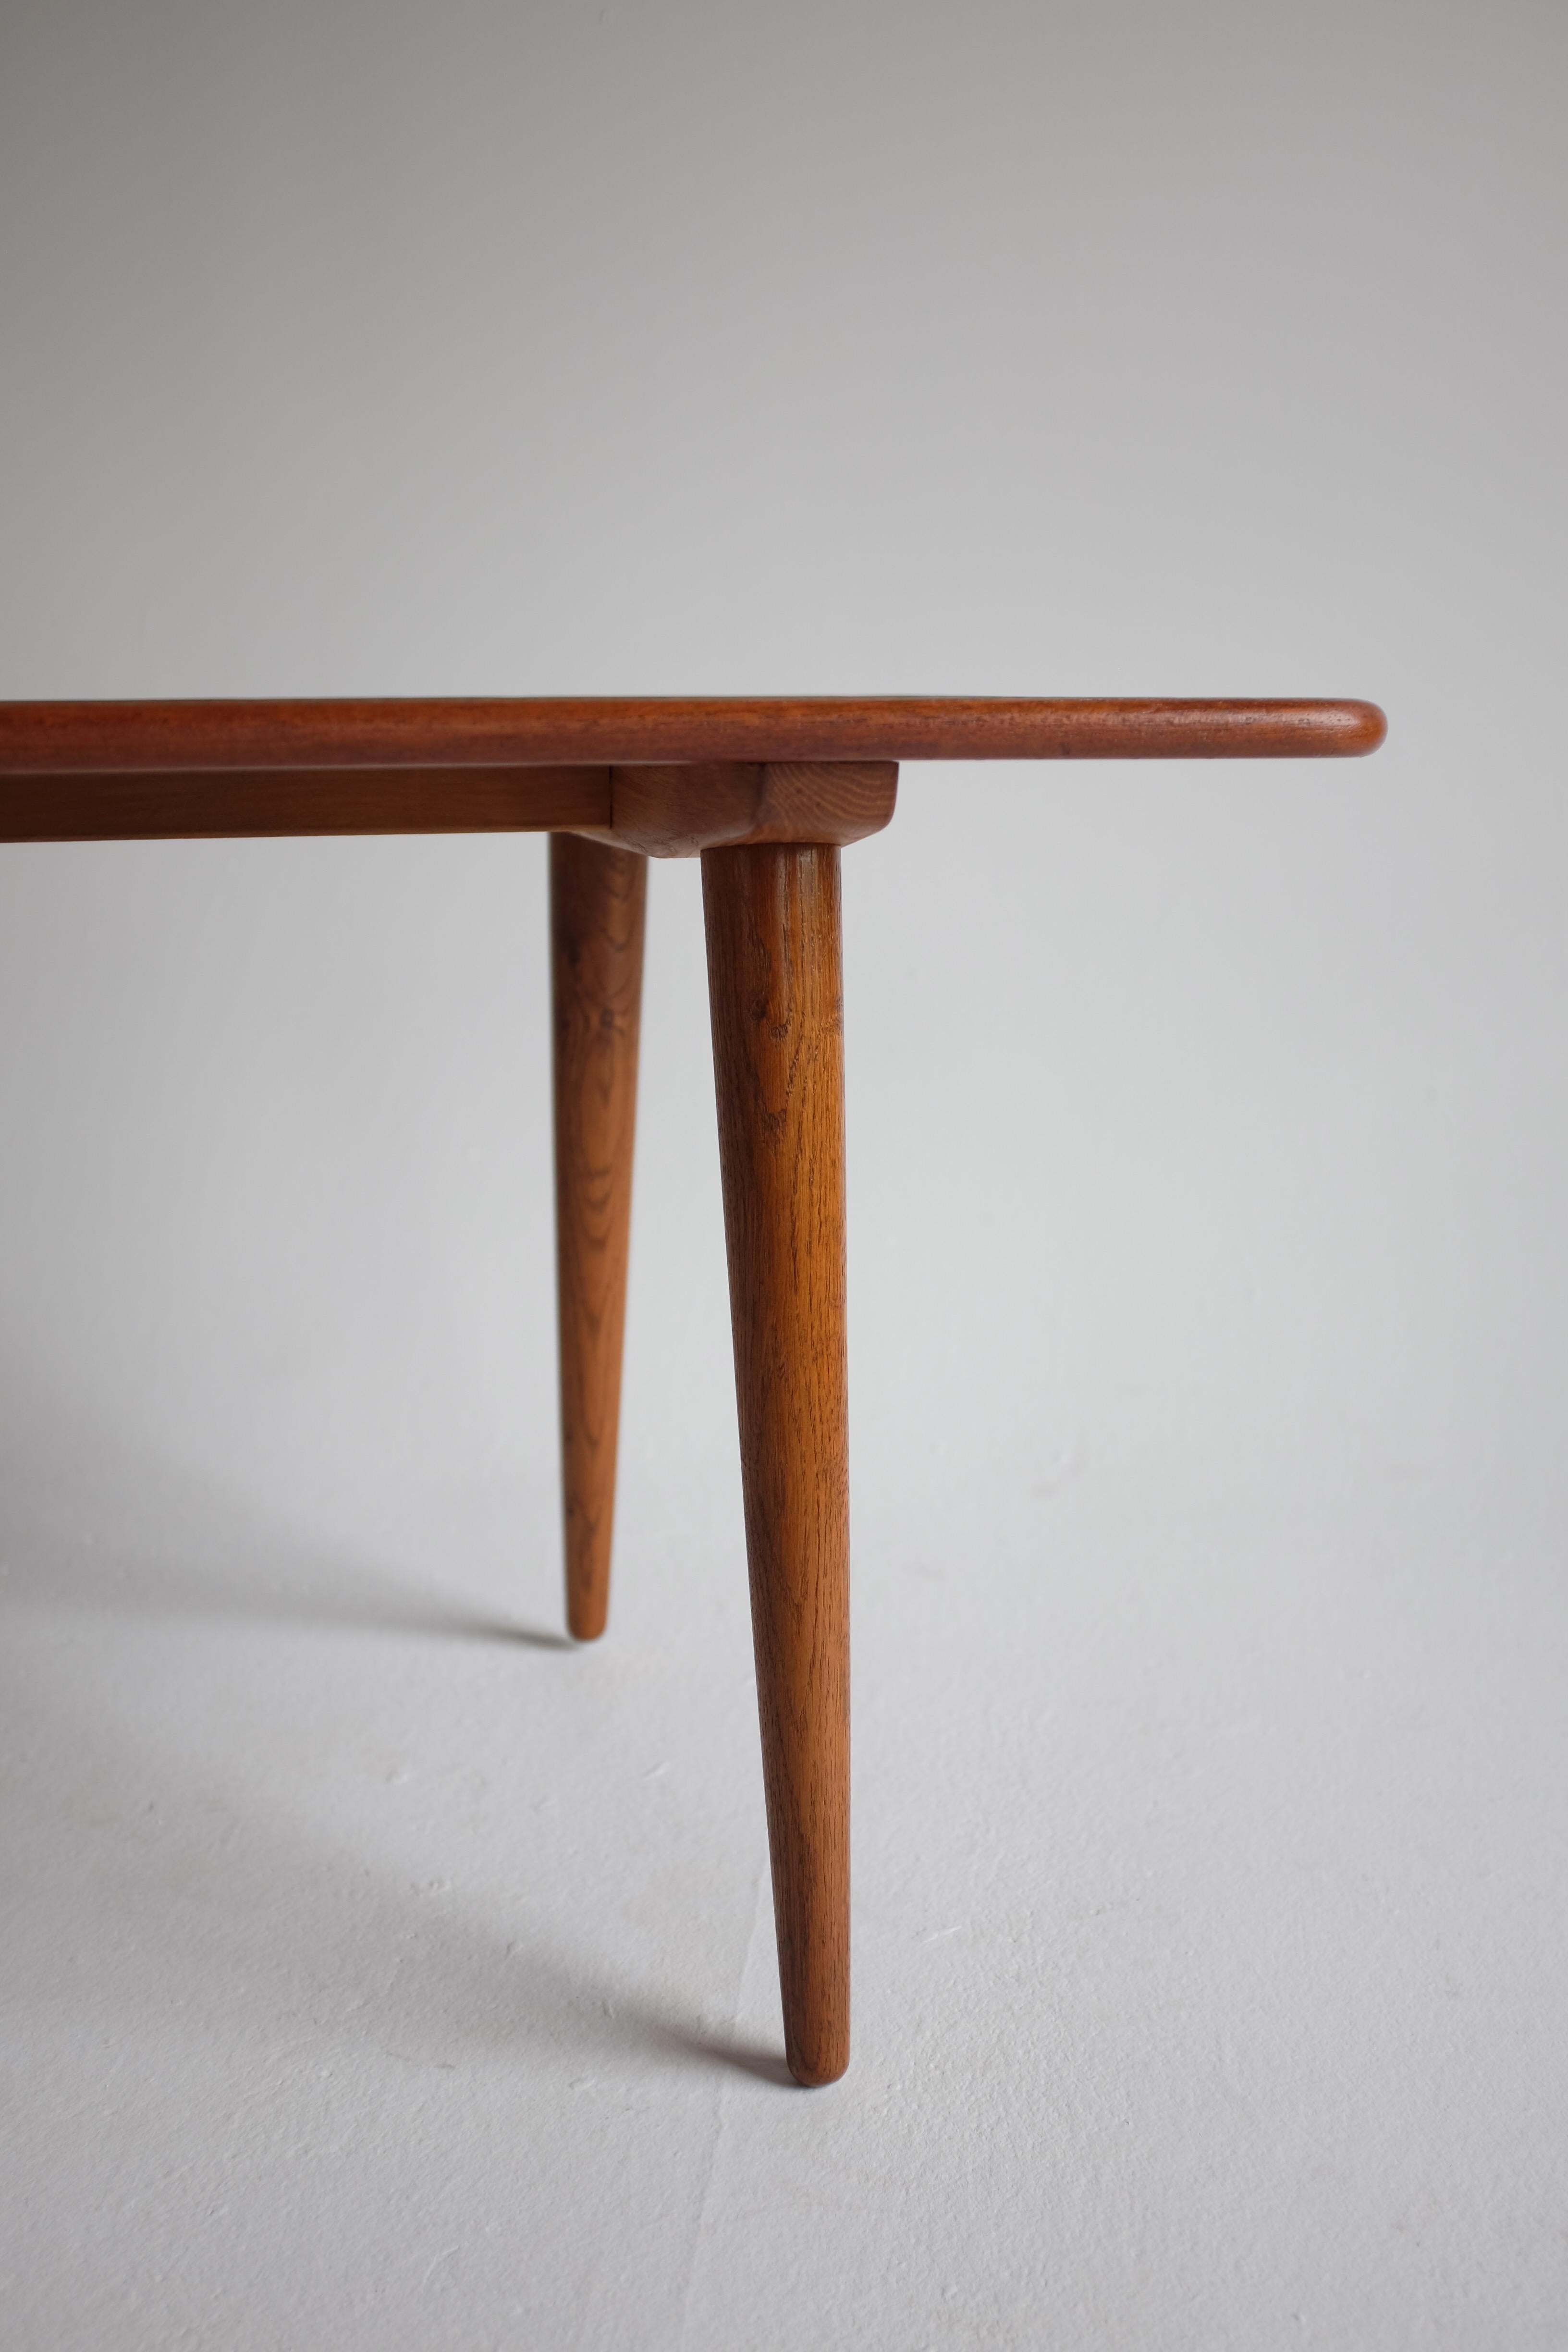 Table basse iconique T-11 par Hans Wegner pour Andreas Tuck, Danemark. Cette pièce a un plateau en teck, des pieds en chêne et un dessous marqué. Conçu en 1954 et fabriqué dans les années 1950, ce modèle est un classique de Hans Wegner, avec des